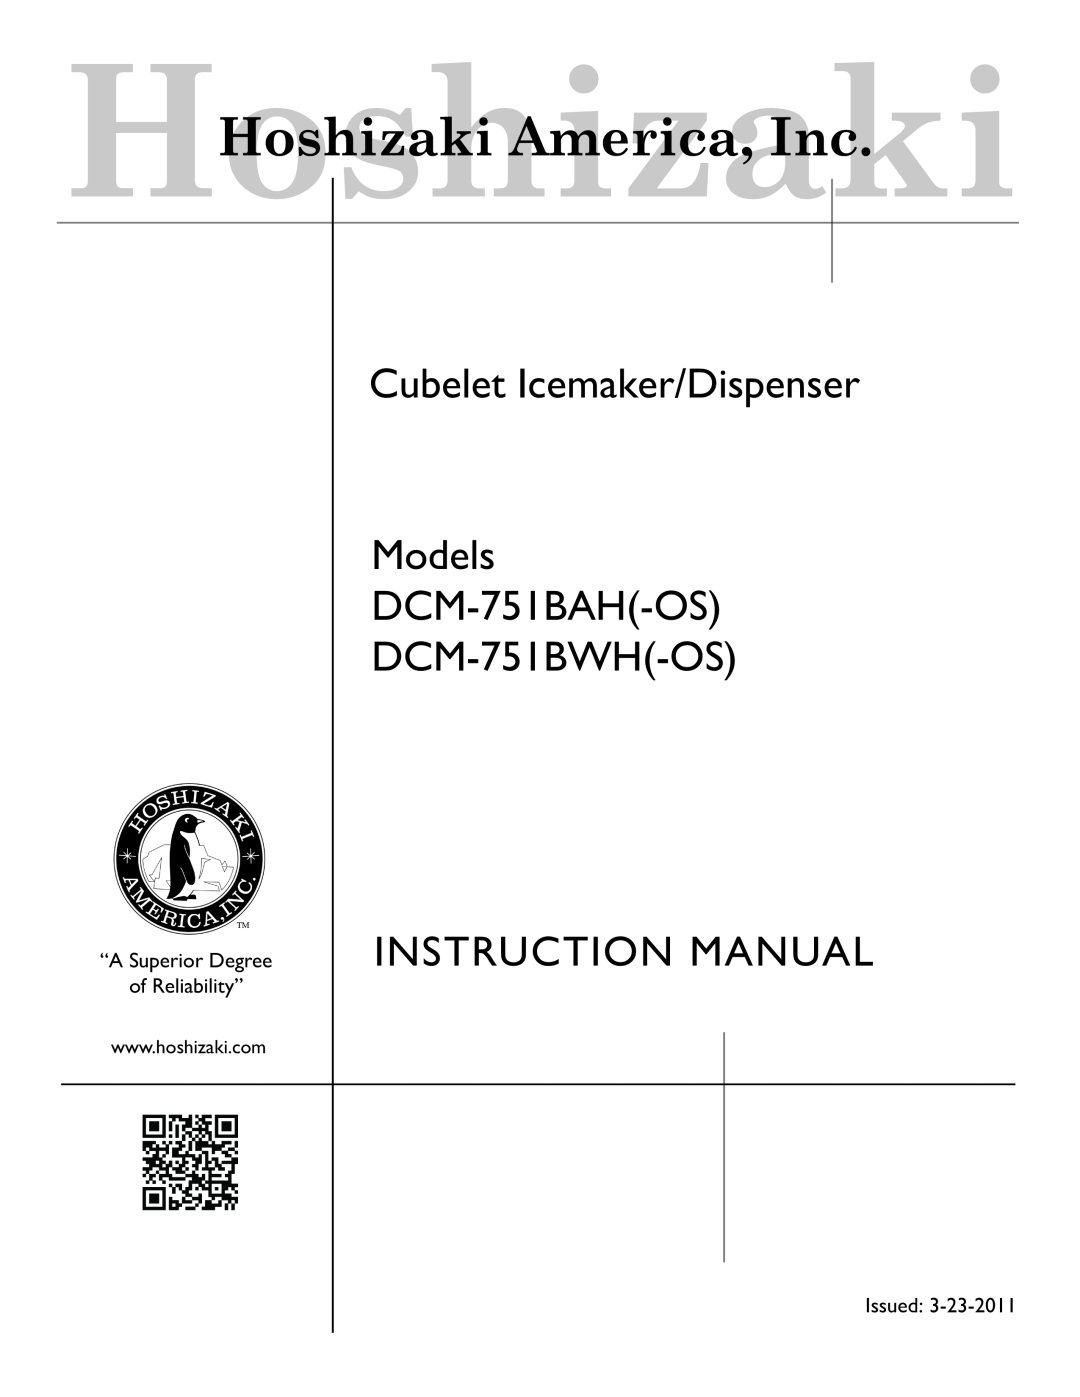 Hoshizaki DCM-751BWH(-OS), DCM-751BAH(-OS) instruction manual Cubelet Icemaker/Dispenser Models DCM-751BAH-OS 